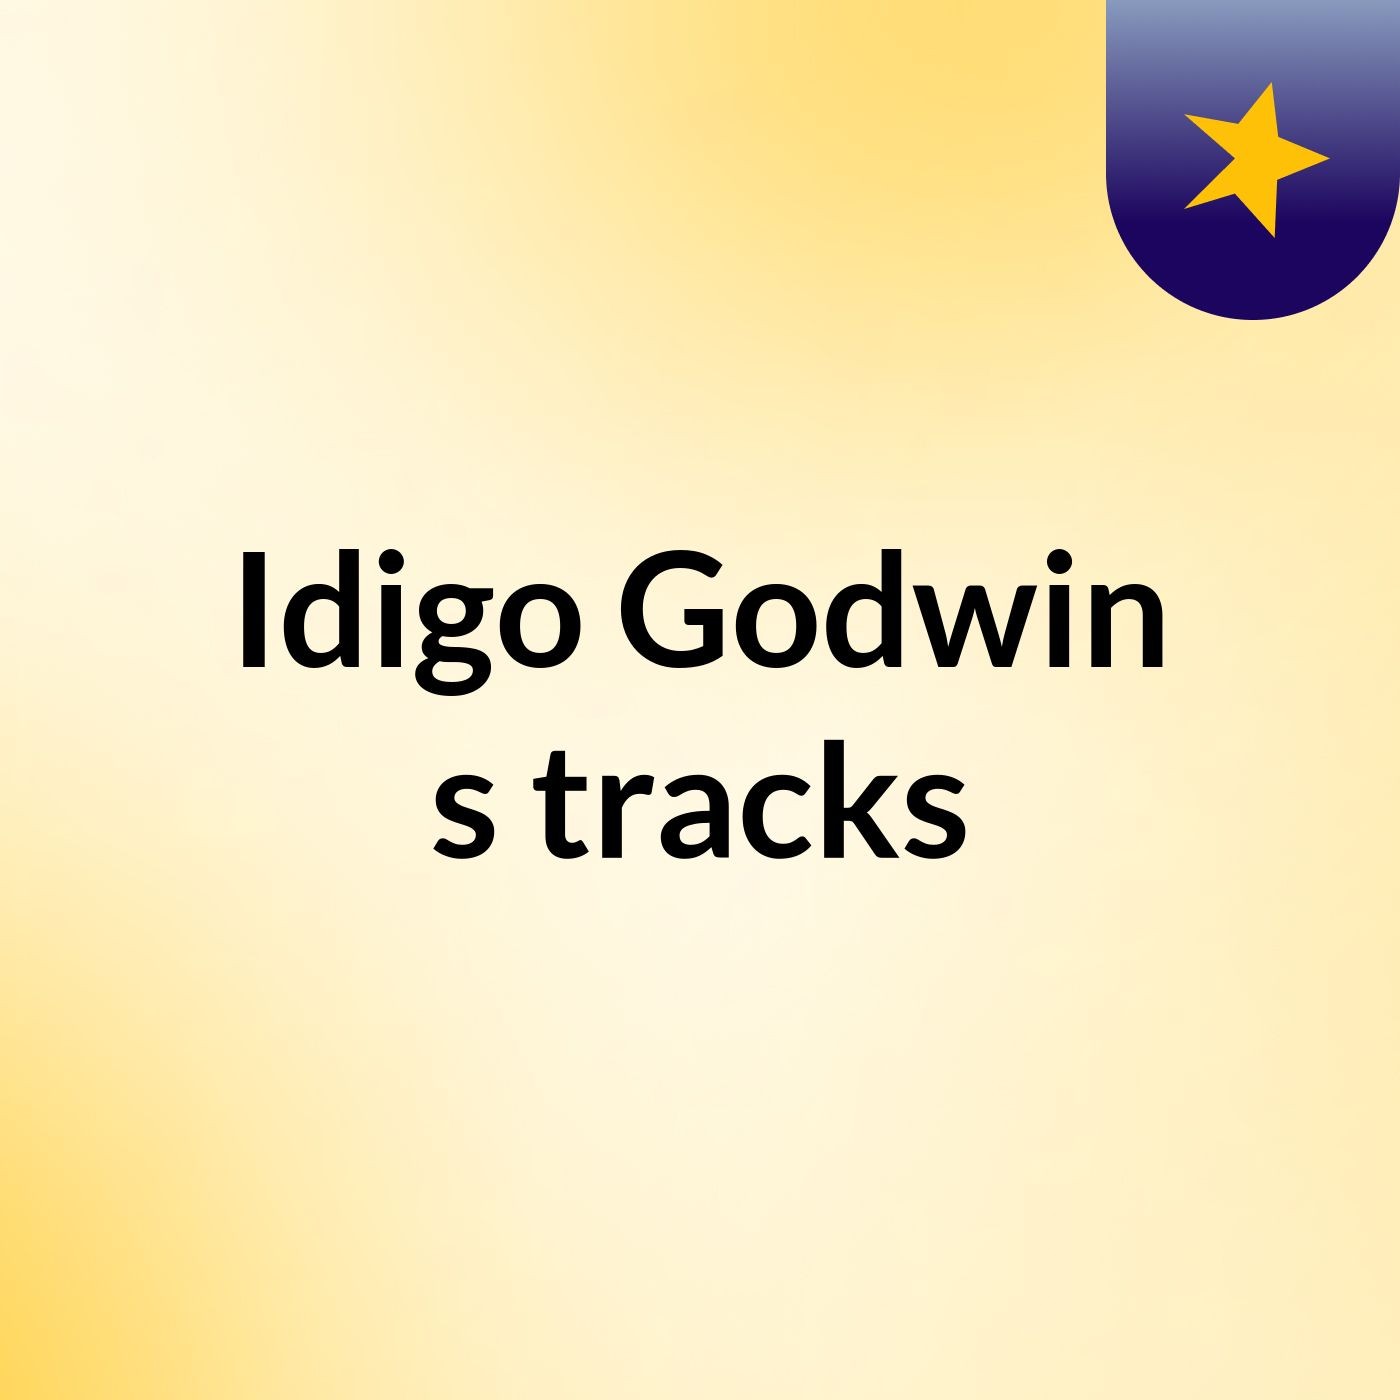 Idigo Godwin's tracks